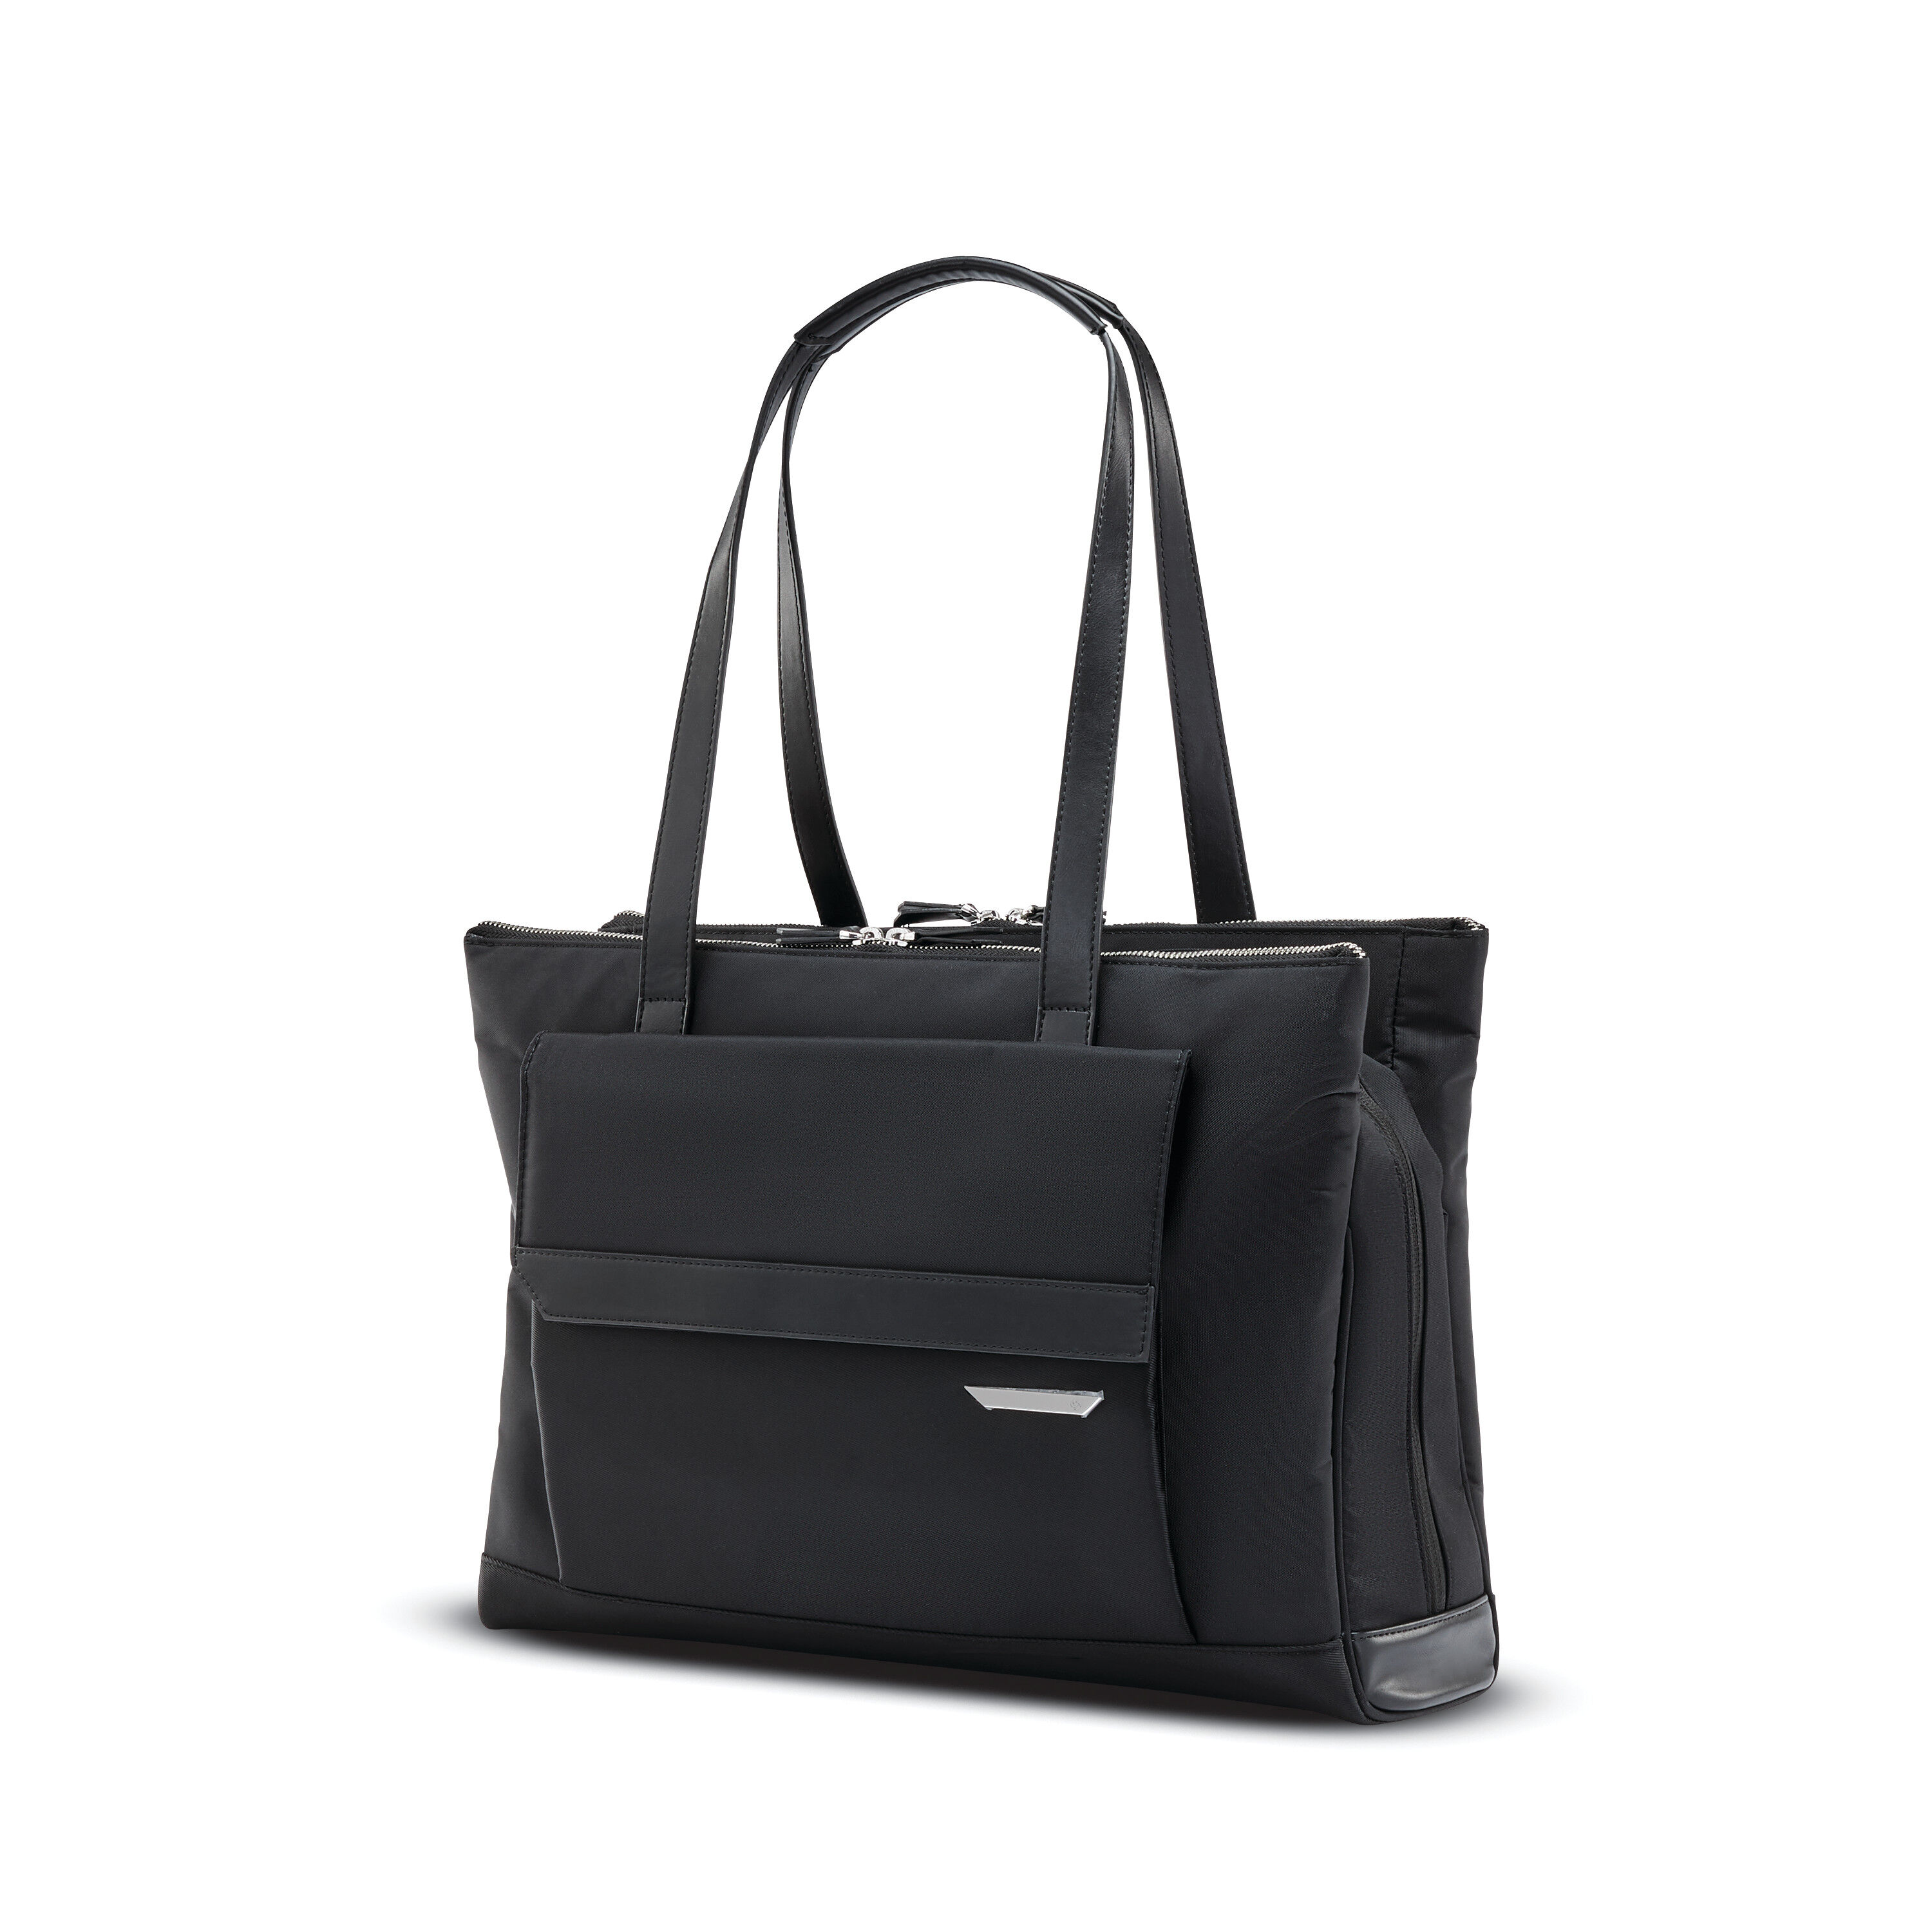 Shop Samsonite Bags Online | Samsonite UK